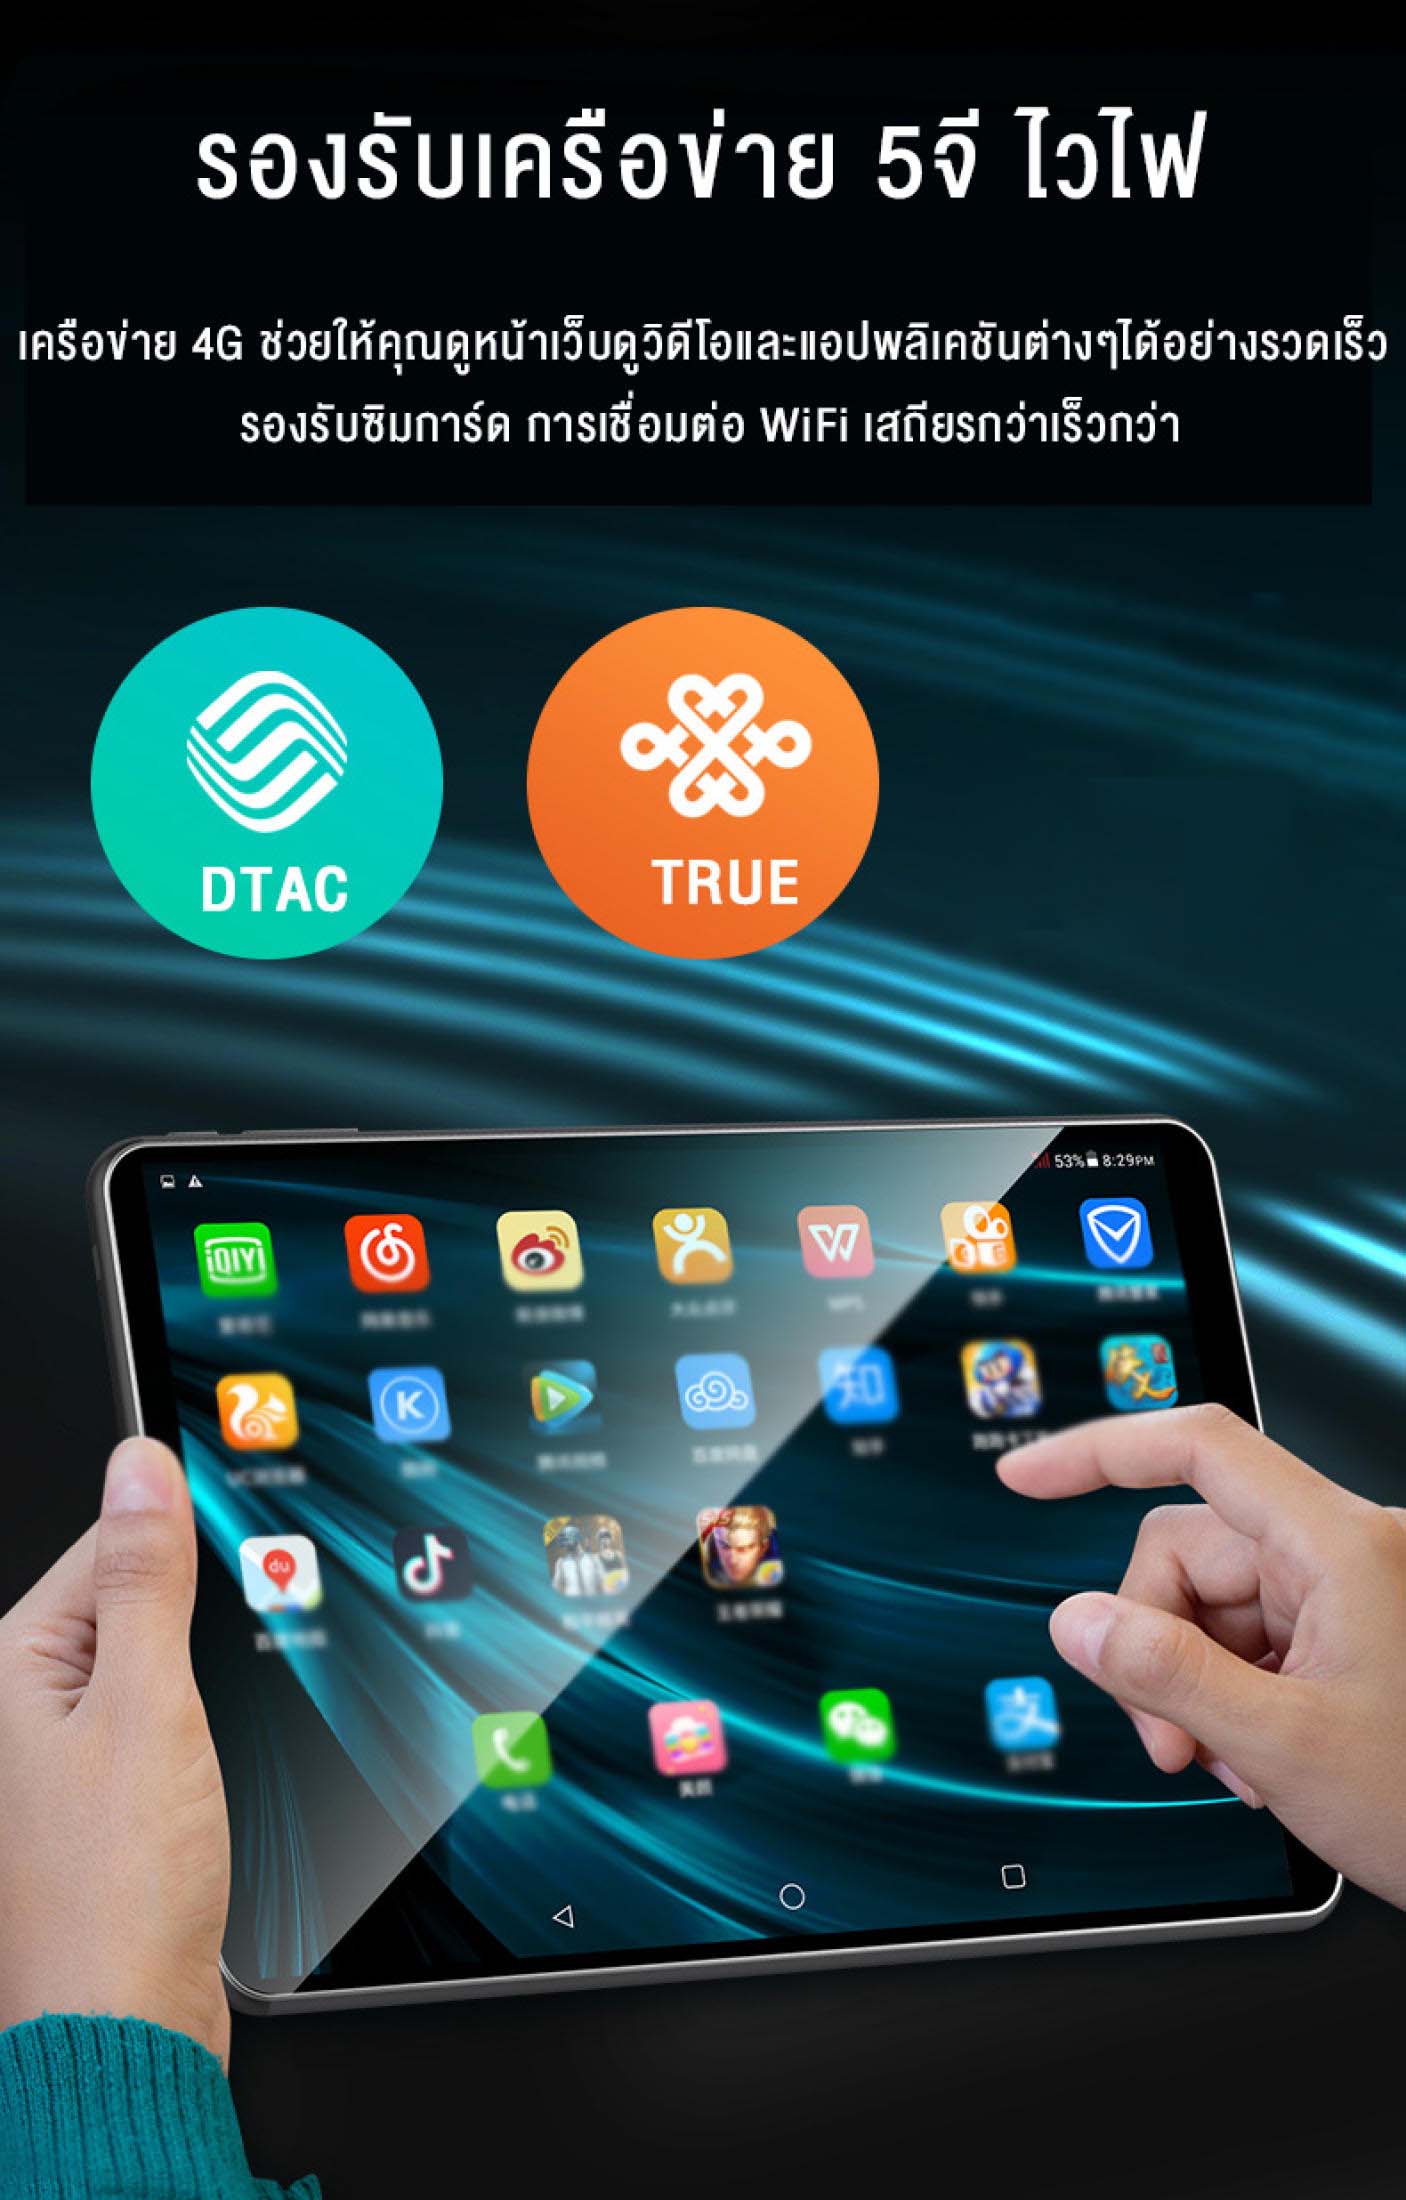 มุมมองเพิ่มเติมของสินค้า [สเปคแท้100%] ศูนย์ไทย REALMI แท็บเล็ต ซิม 10.1 นิ้ว แท็บเล็ตถูกๆ แท็บเล็ตใหม่ล่าสุดที่มาแรงจัดส่งฟรี (8G+256G) Android 10.0 Tablet แท็บเล็ตที่อัปเกรด แท็บเล็ตใหม่ realmi Tablet แท็บเล็ตถูกๆ 10.1 นิ้ว โทรได้ Full HD Tablet